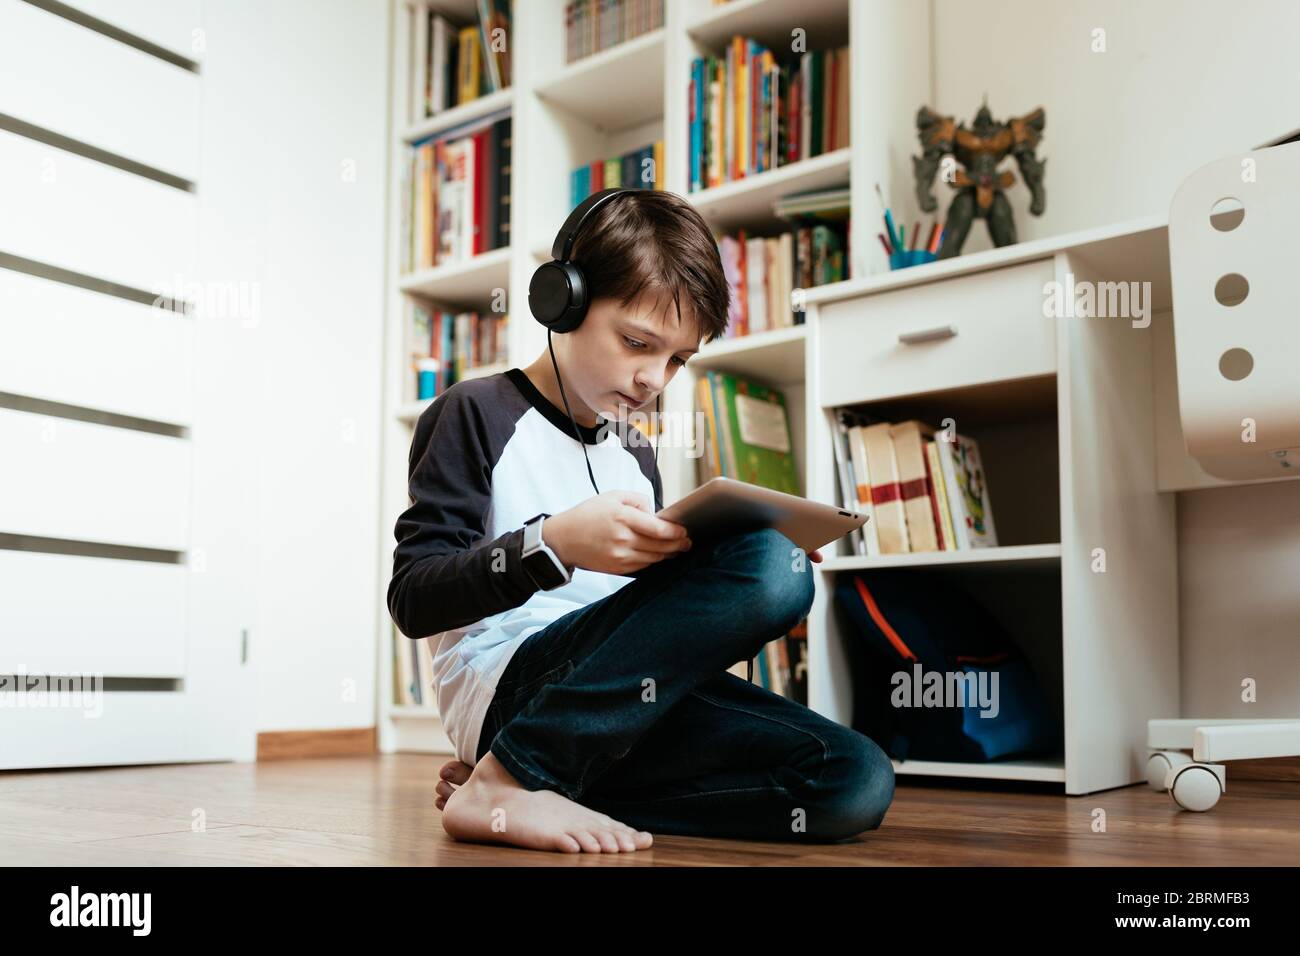 Un garçon qui s'agenouille apprend sur une tablette numérique à la maison. Un jeune étudiant fait ses devoirs seul. Banque D'Images